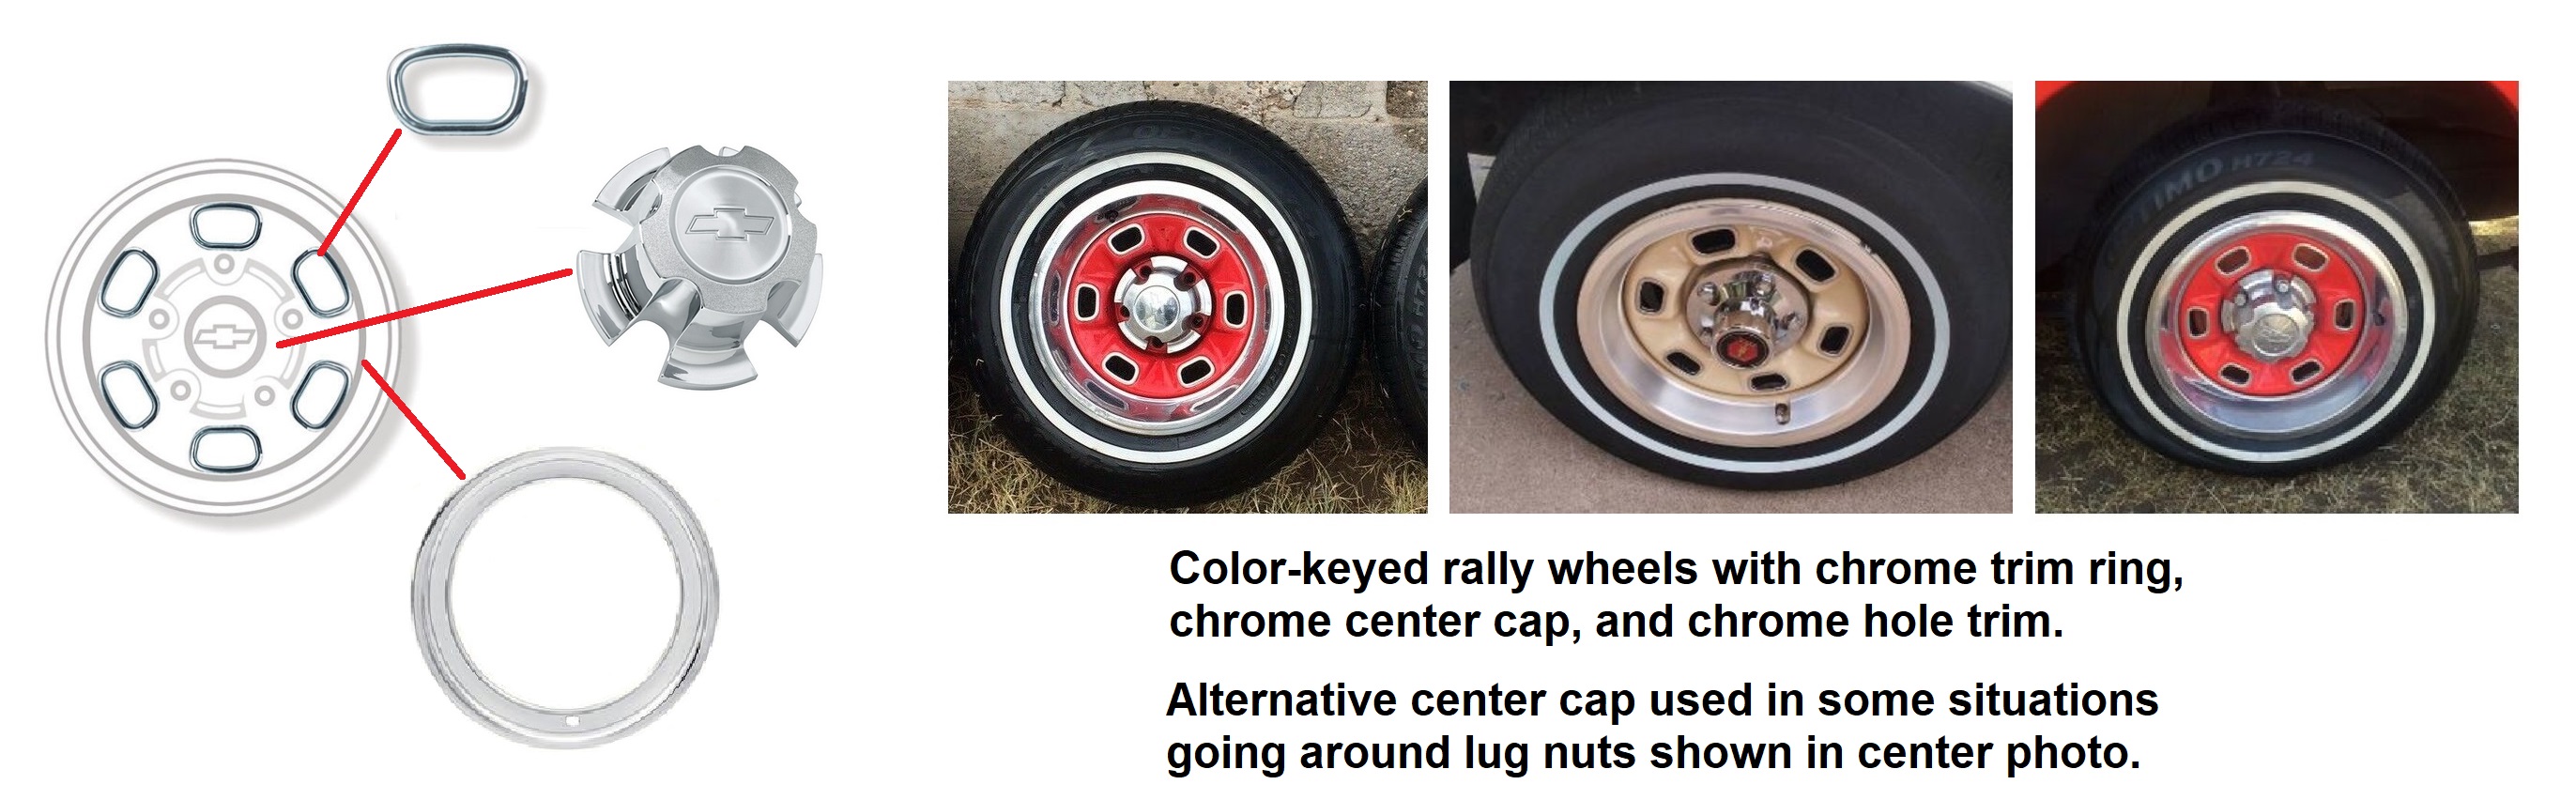 El Camino 1978 rally wheels